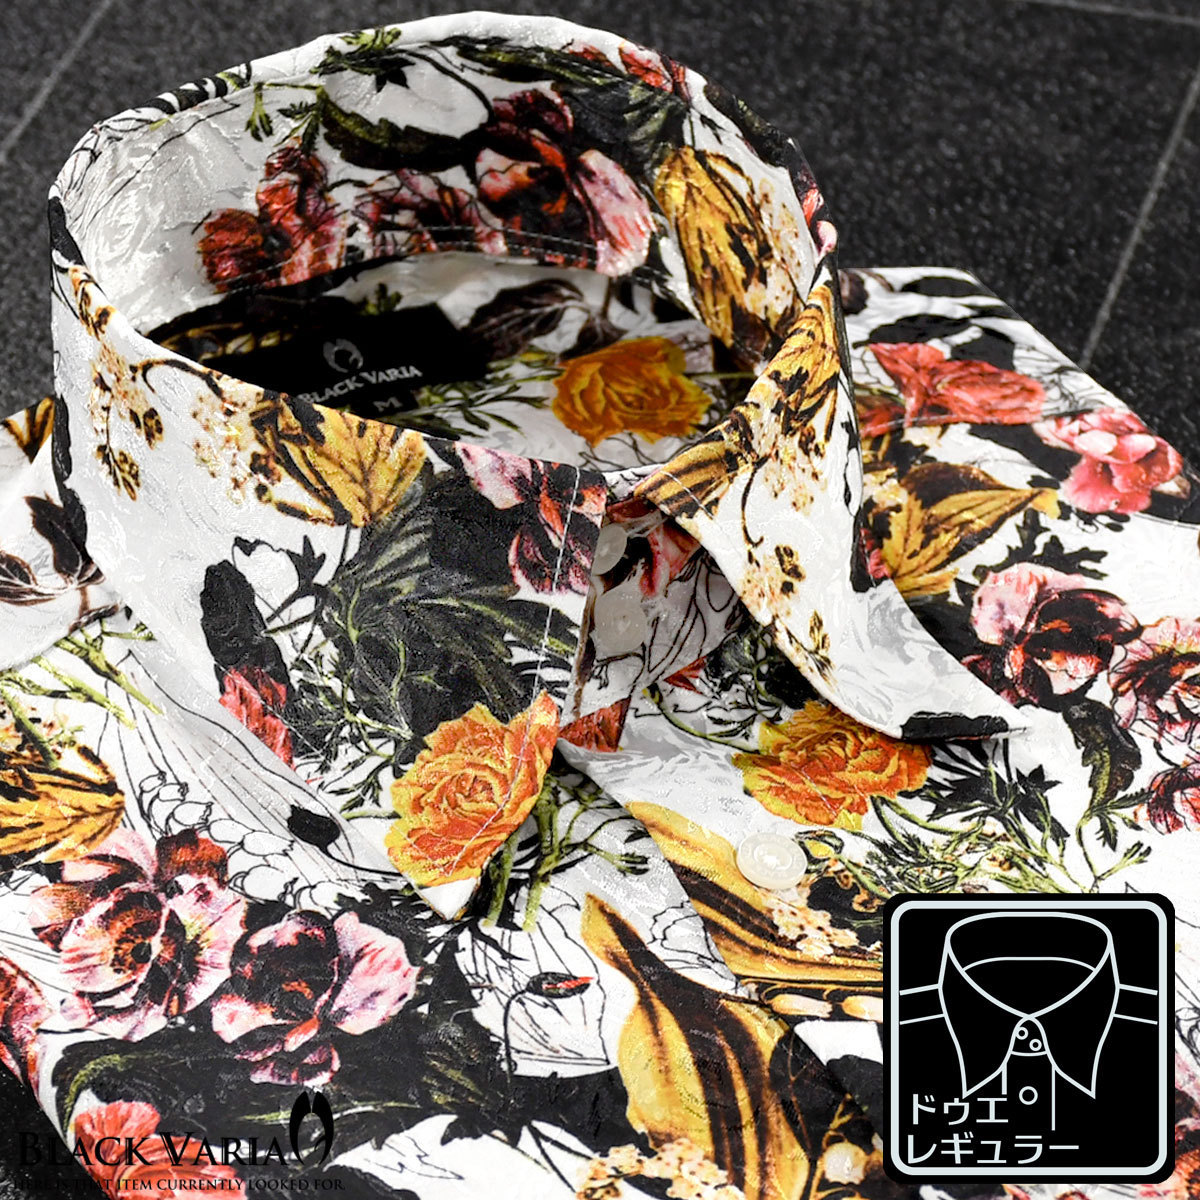 【おまけ付】 6#a181110-wh 華やか M メンズ(ホワイト白) ドレスシャツ [レギュラーカラー]バラ織柄 ボタニカル花柄 ドゥエボットーニ ブラックバリア Mサイズ